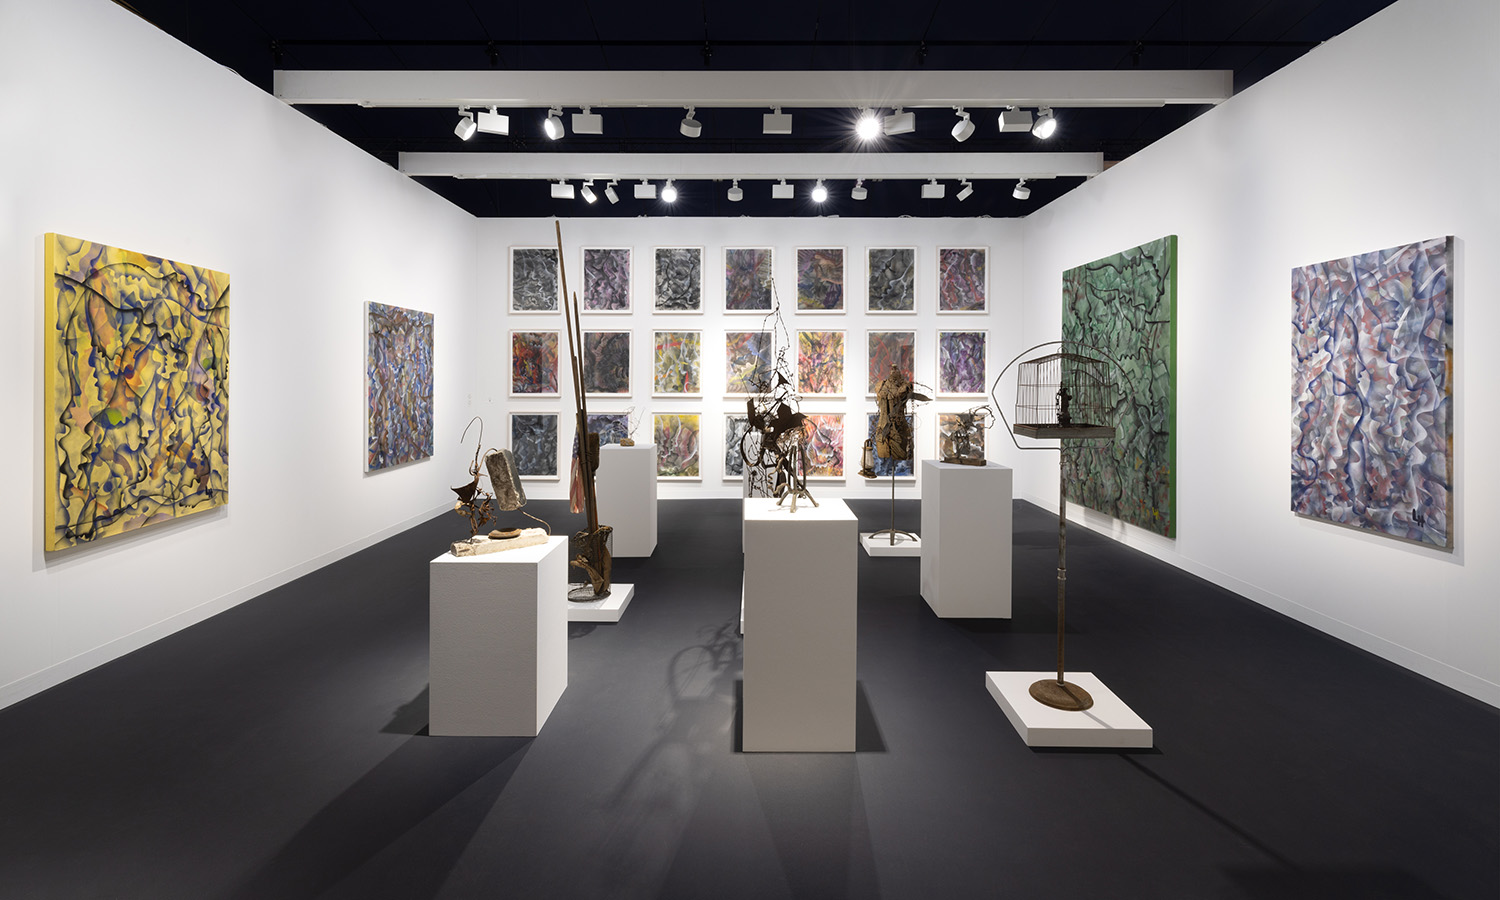 Louis Vuitton Presents Its Own Kind of Exhibition at Paris+ par Art Basel